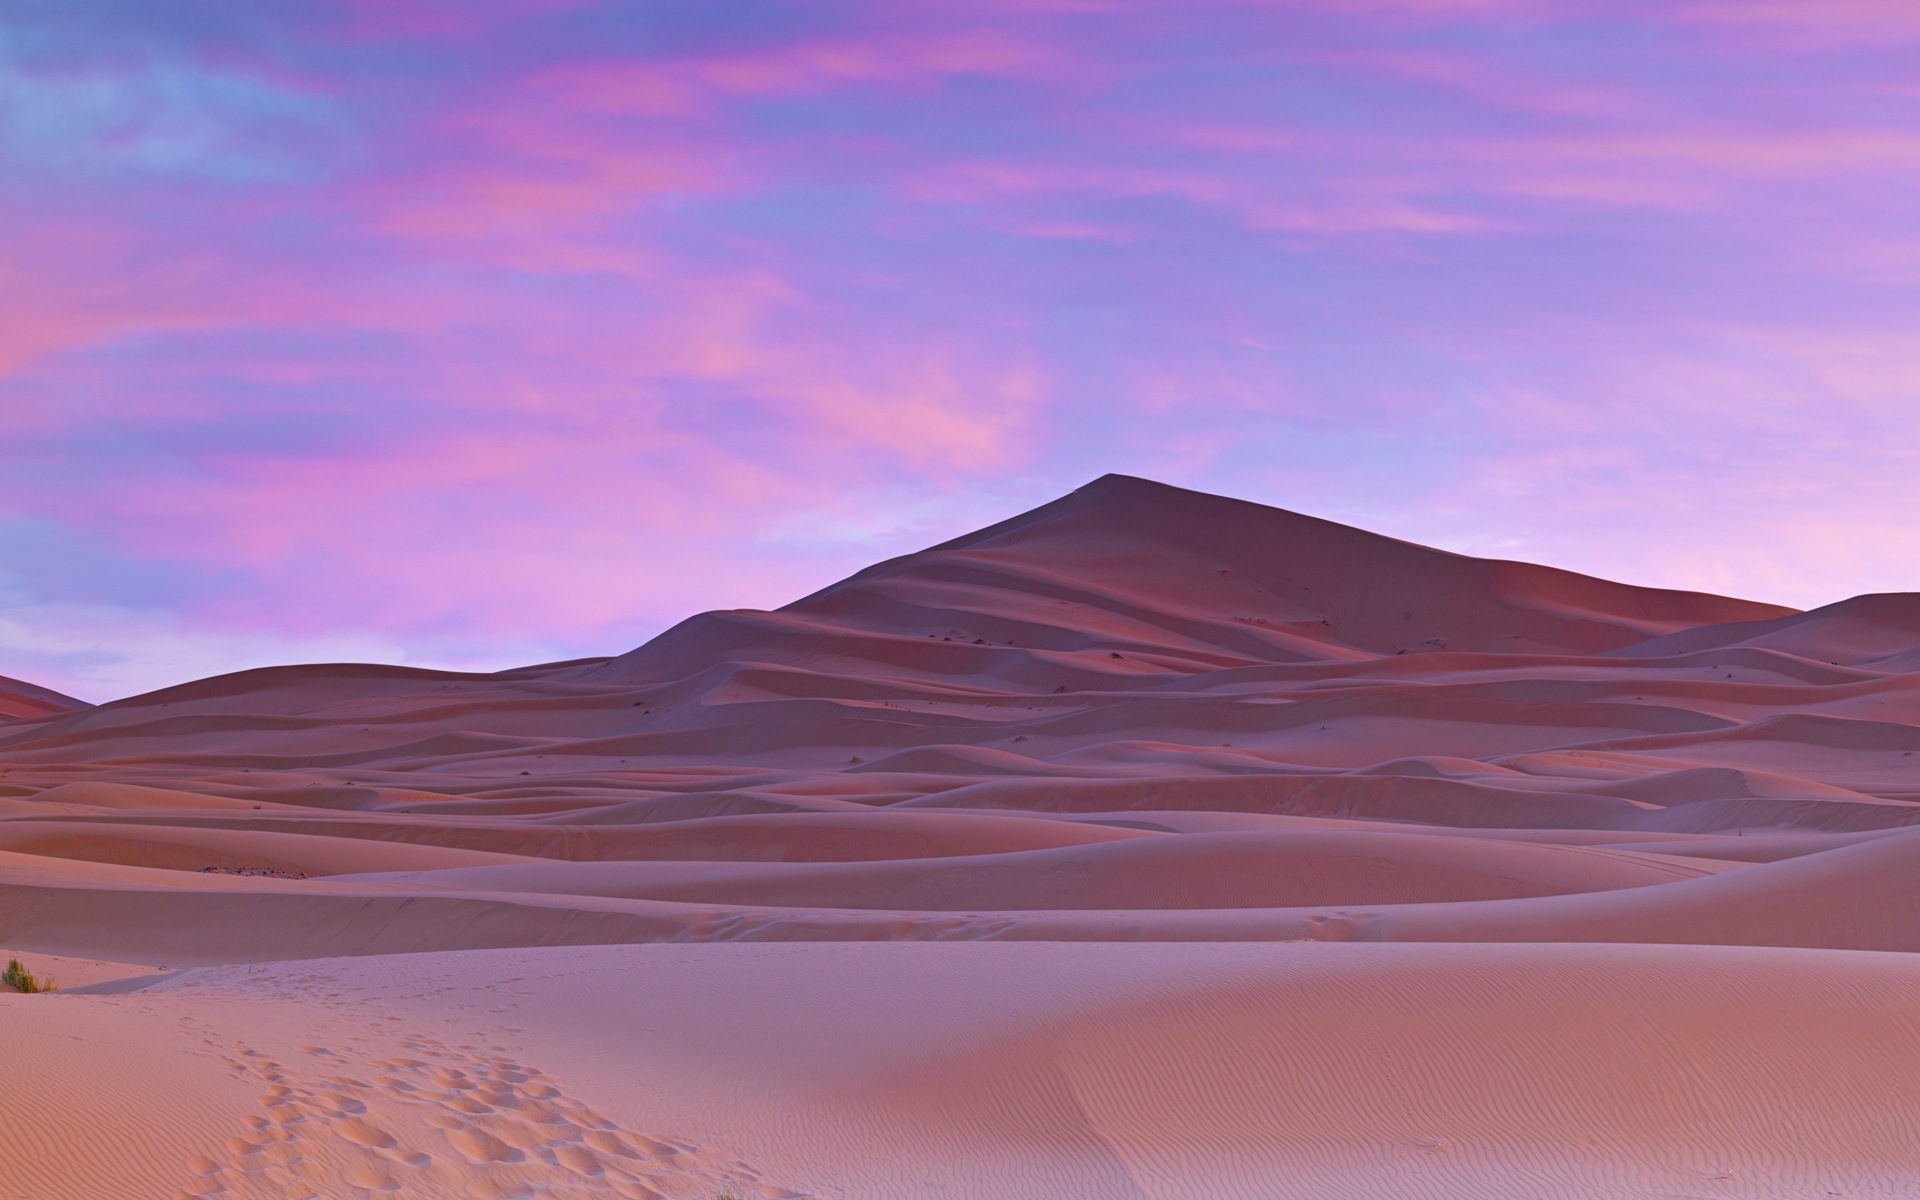 Les déserts chauds et arides, de Windows 8 fonds d'écran widescreen panoramique #1 - 1920x1200